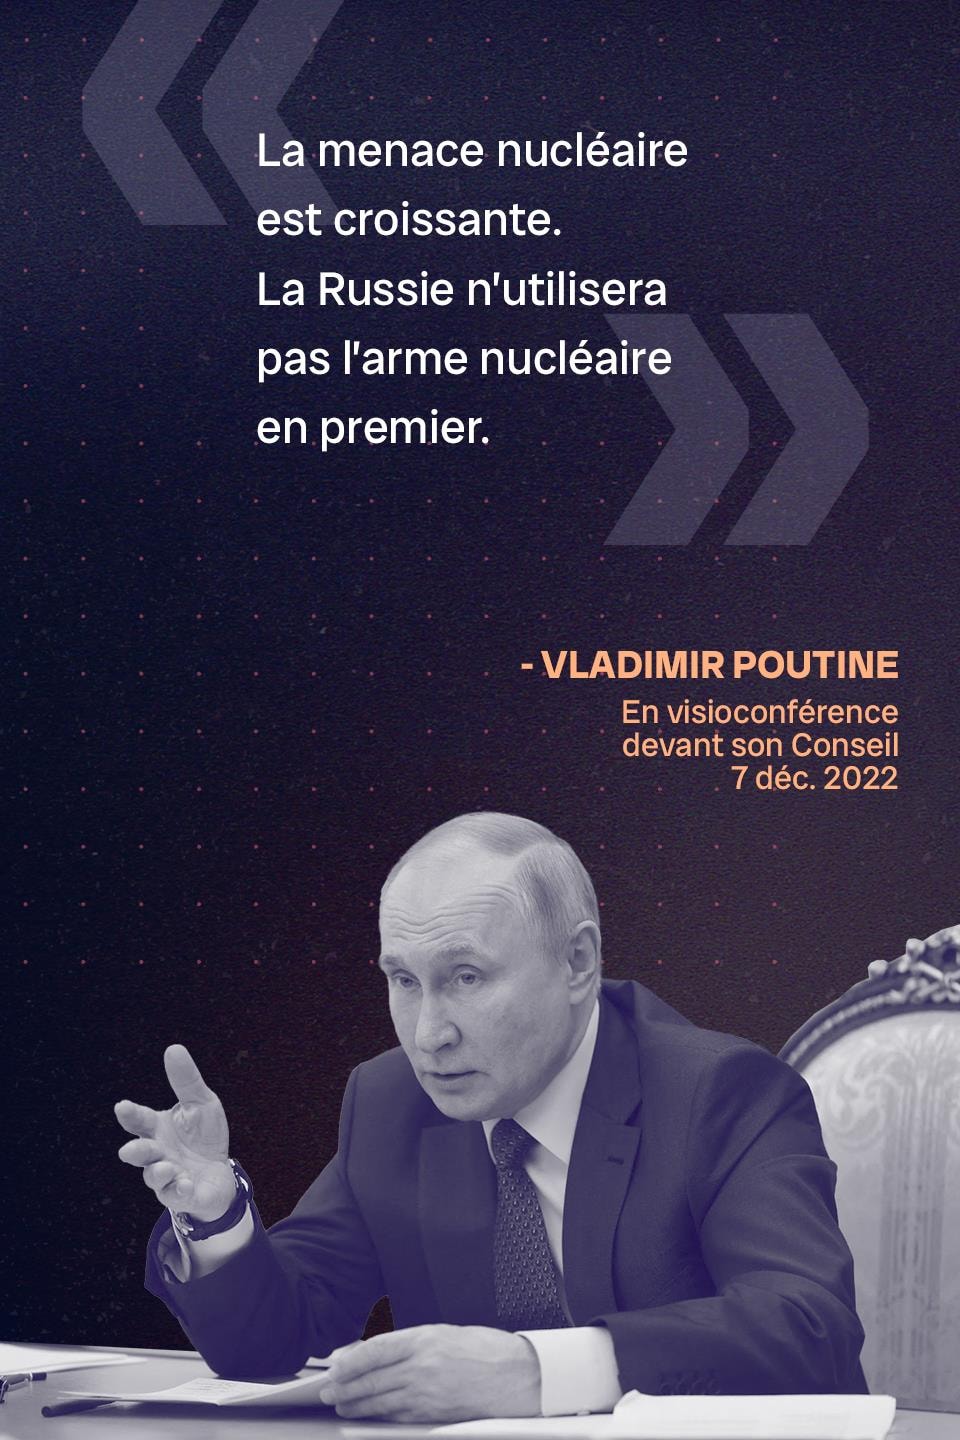 « La menace nucléaire est croissante. La Russie n’utilisera pas l’arme nucléaire en premier. » - Vladimir Poutine, le 7 décembre 2022, en visioconférence devant son Conseil des droits de la personne